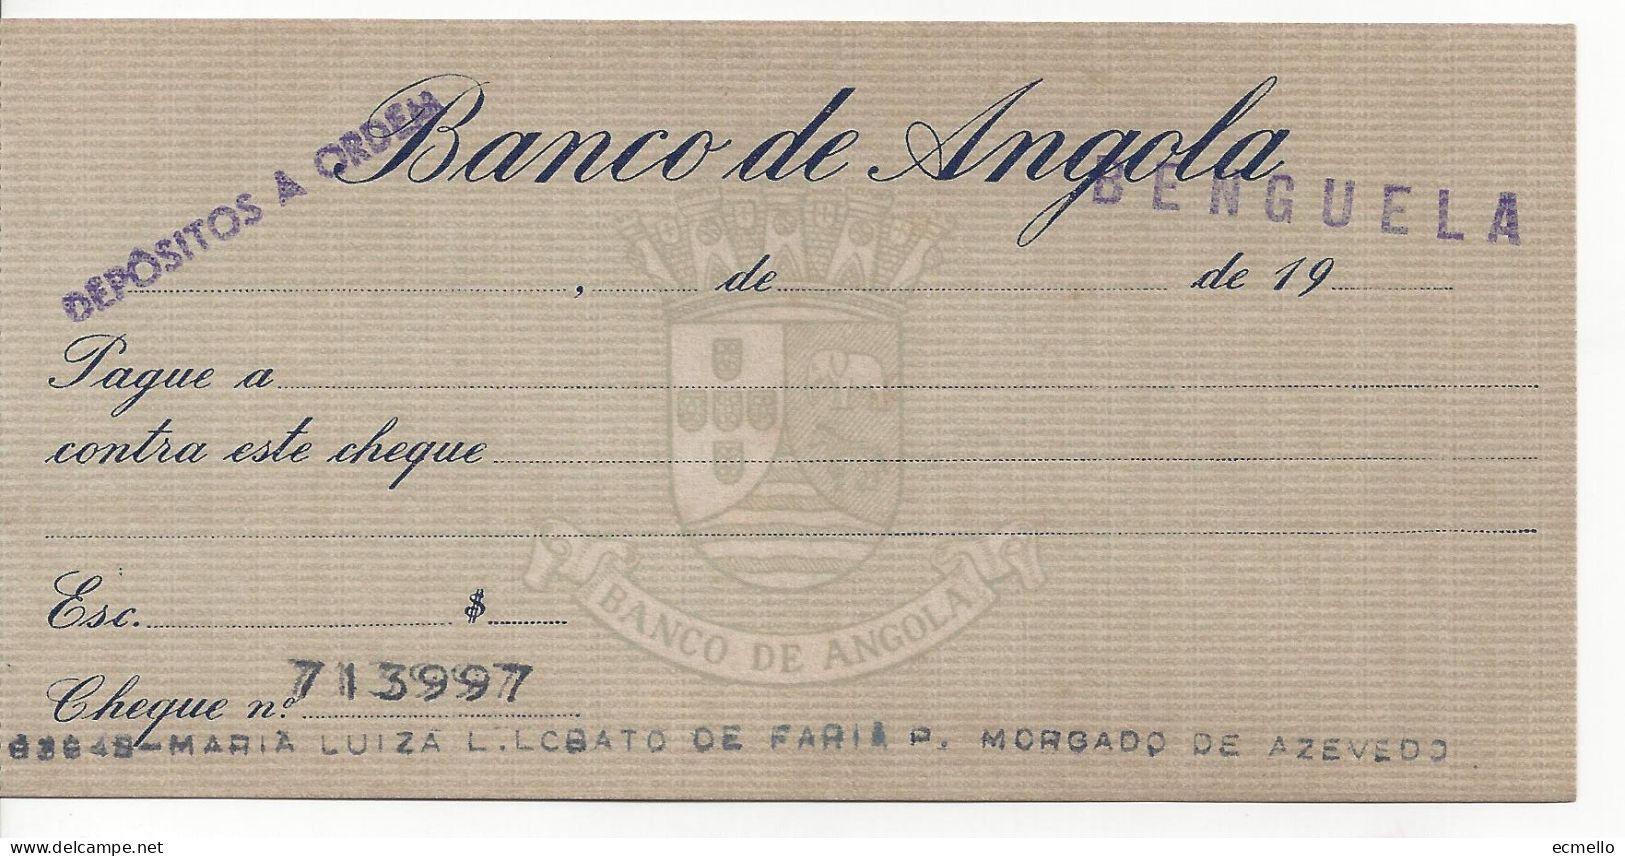 PORTUGAL ANGOLA CHEQUE CHECK BANCO DE ANGOLA, BENGUELA, 1950'S SCARCE - Chèques & Chèques De Voyage